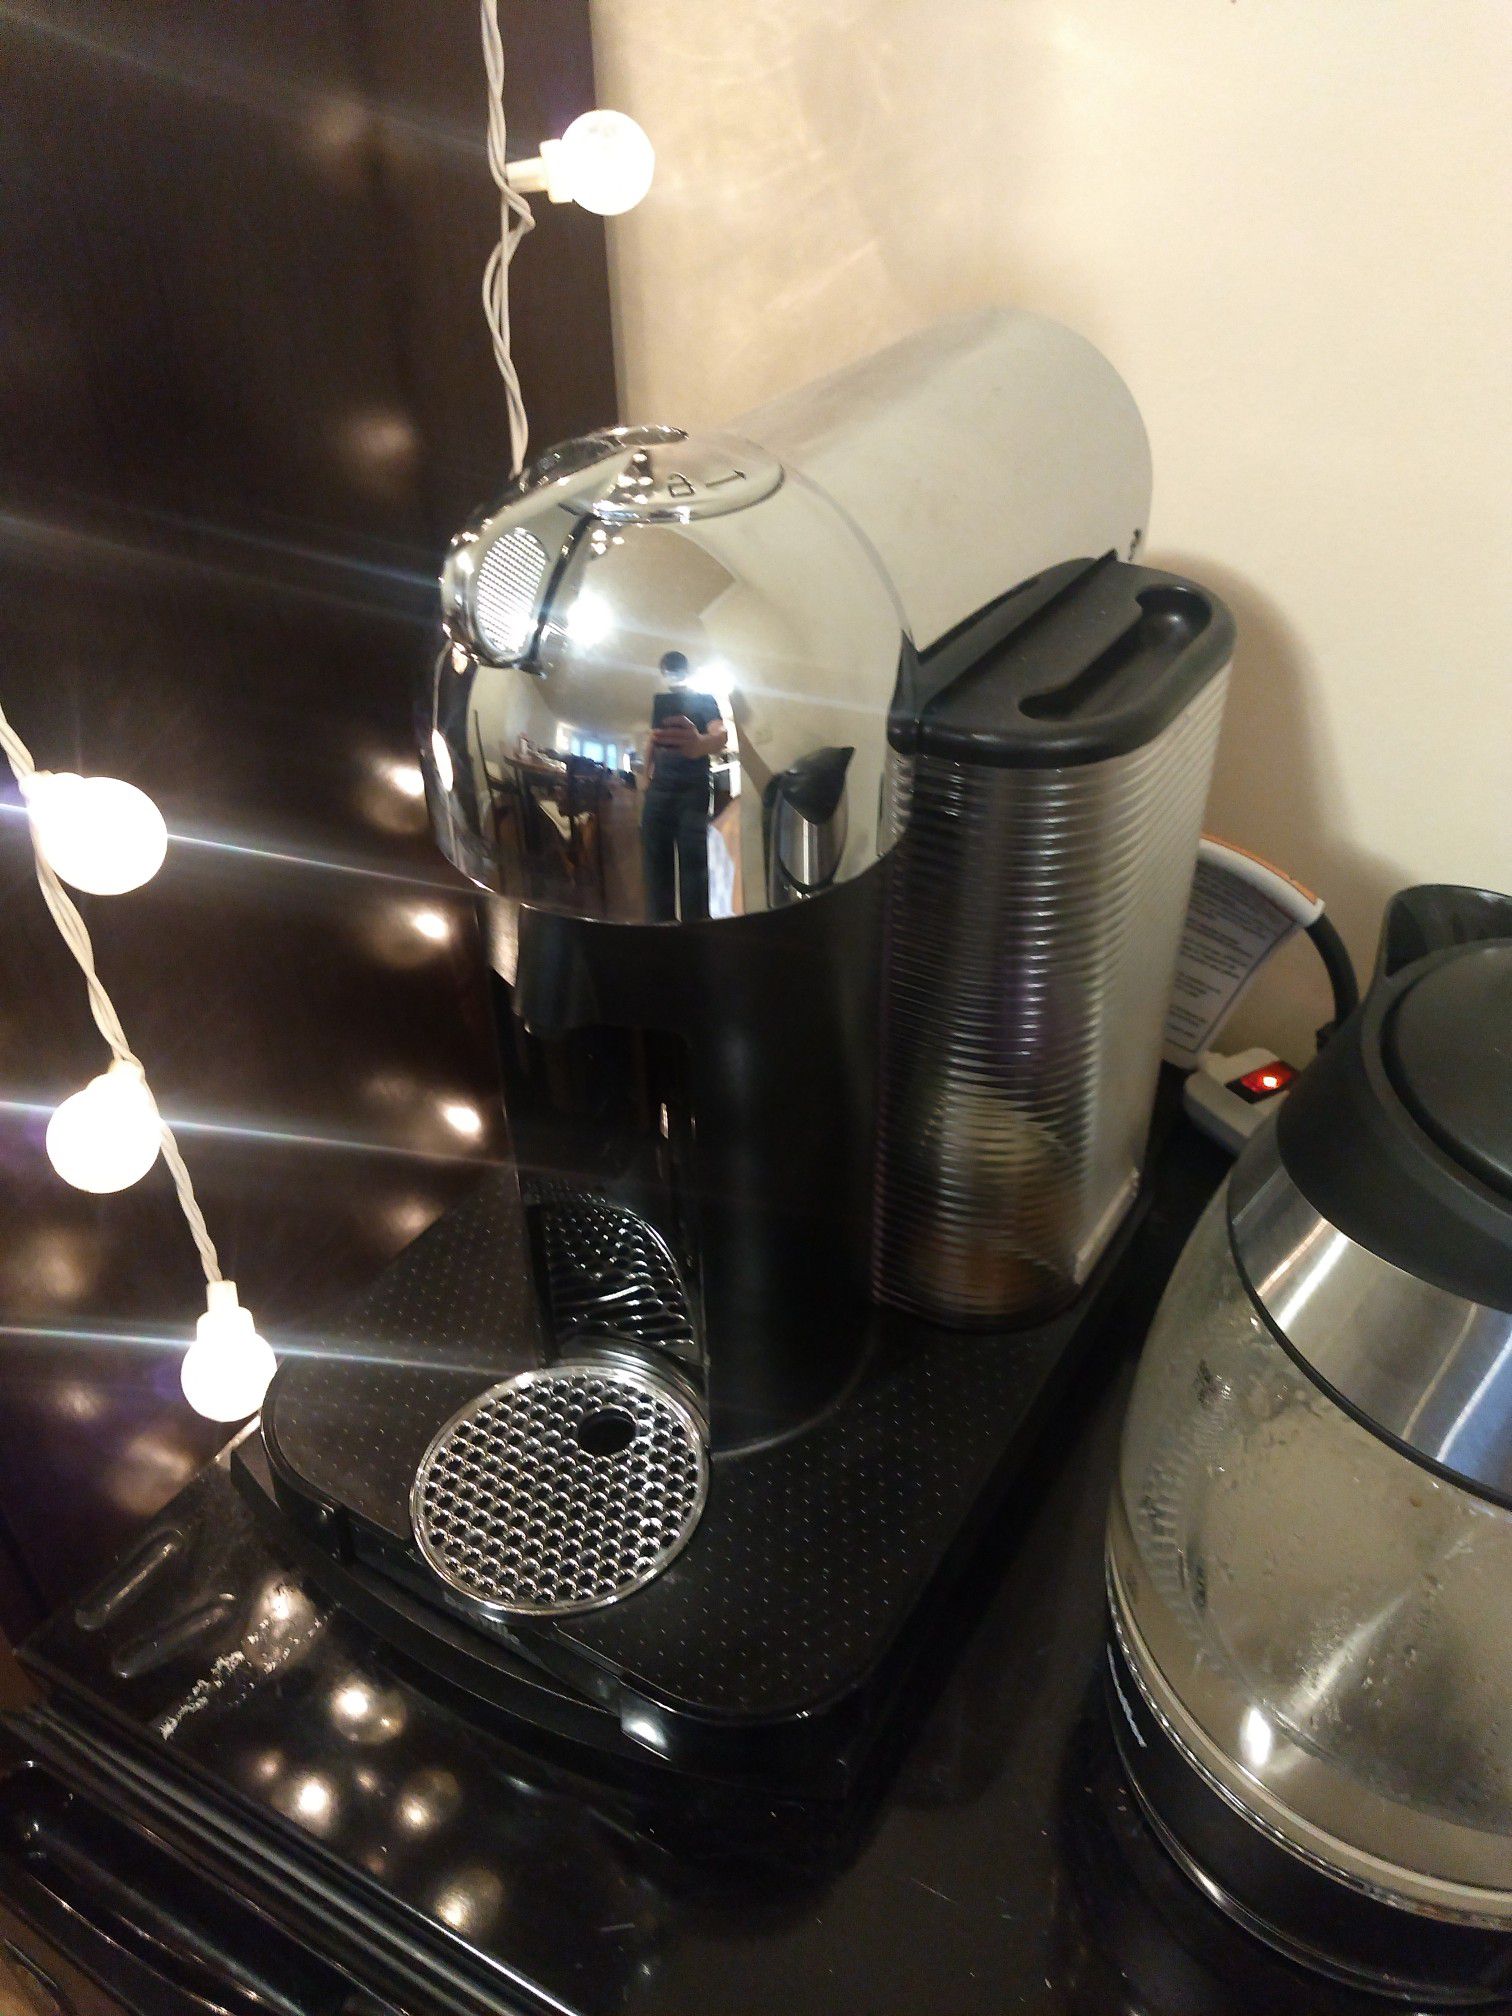 Nespresso breville vertuo coffee maker